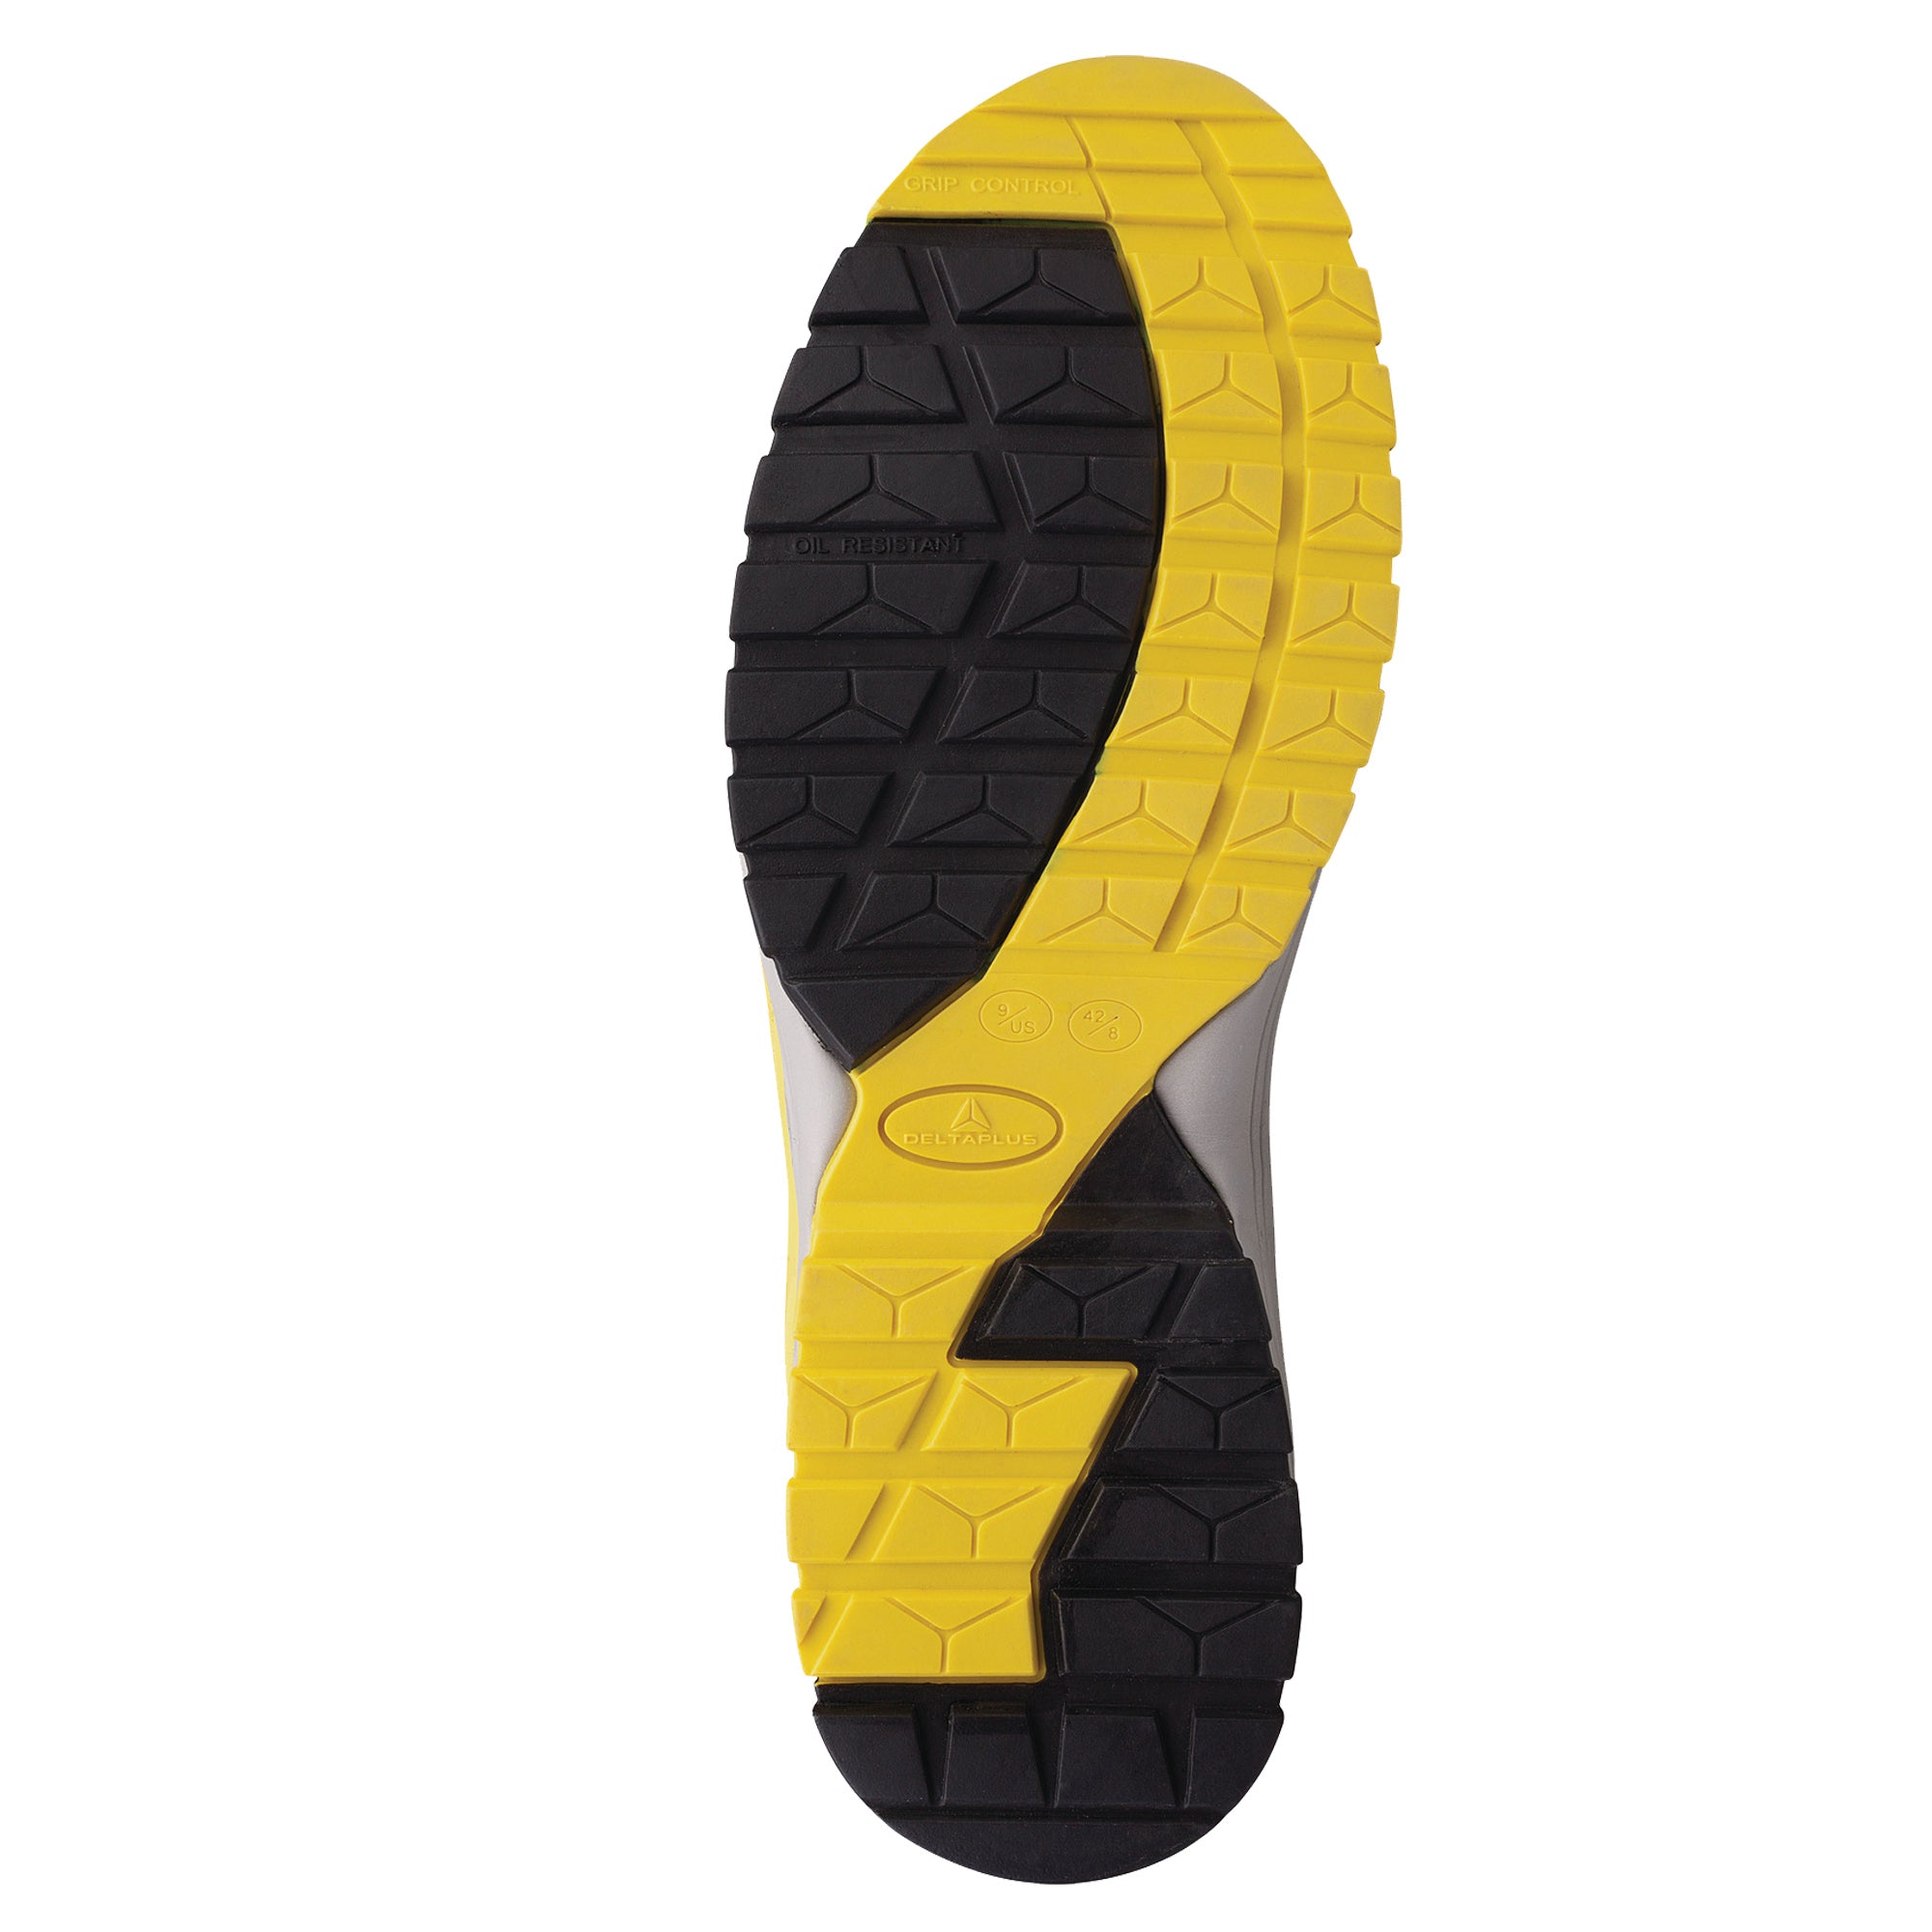 deltaplus-calzatura-sicurezza-memphis-bassa-s1p-esd-hro-src-n-46-nero-giallo